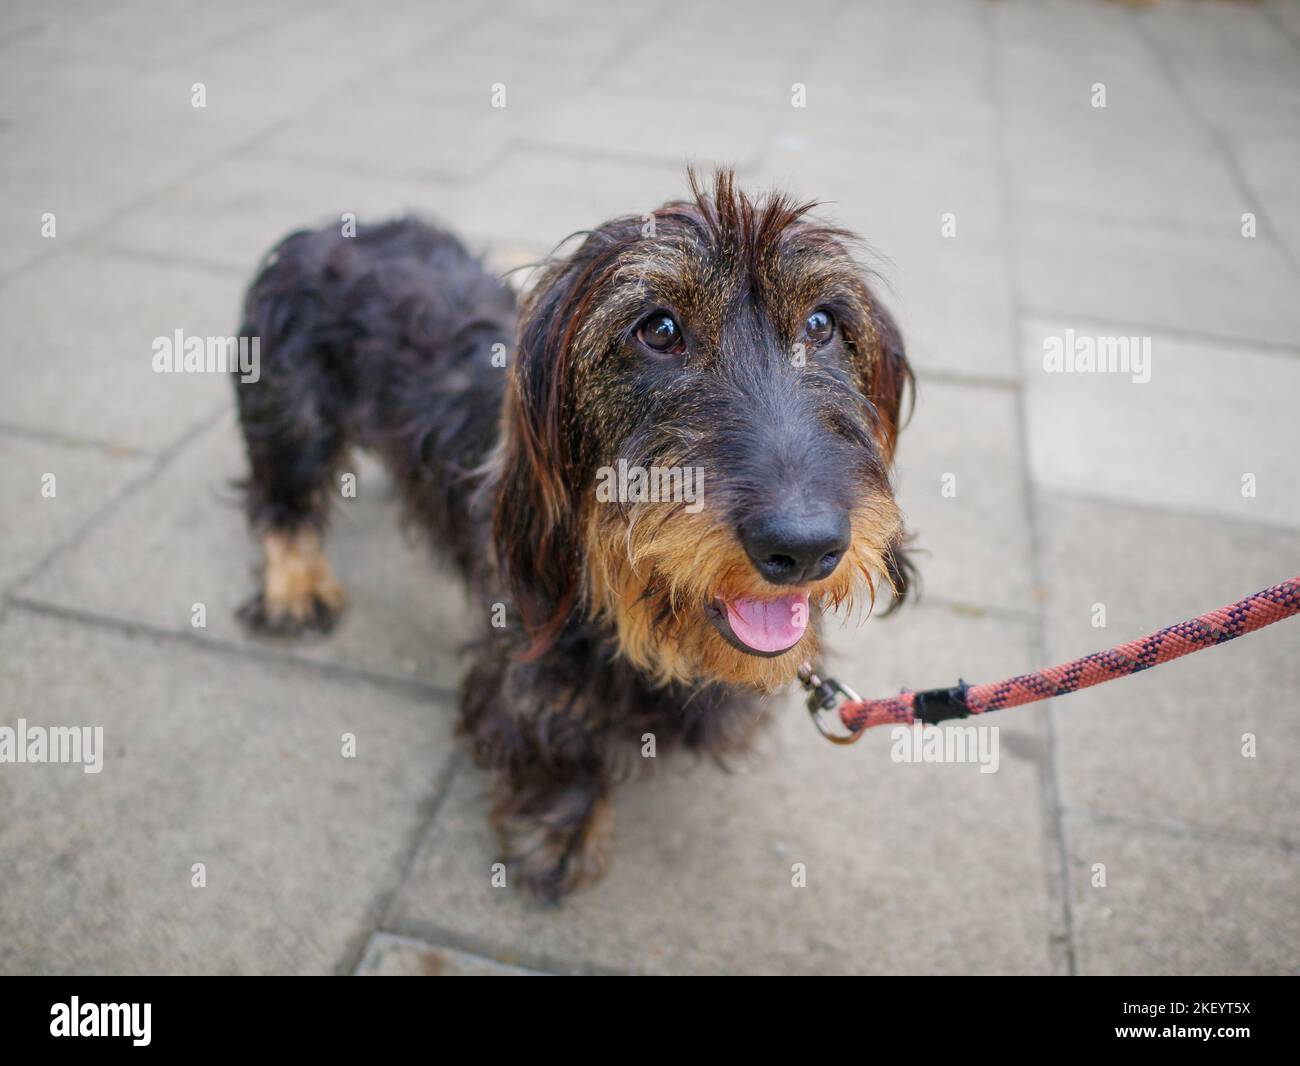 Portrait d'un chien de daschund à poil dur standard en laisse à l'extérieur dans la rue Banque D'Images